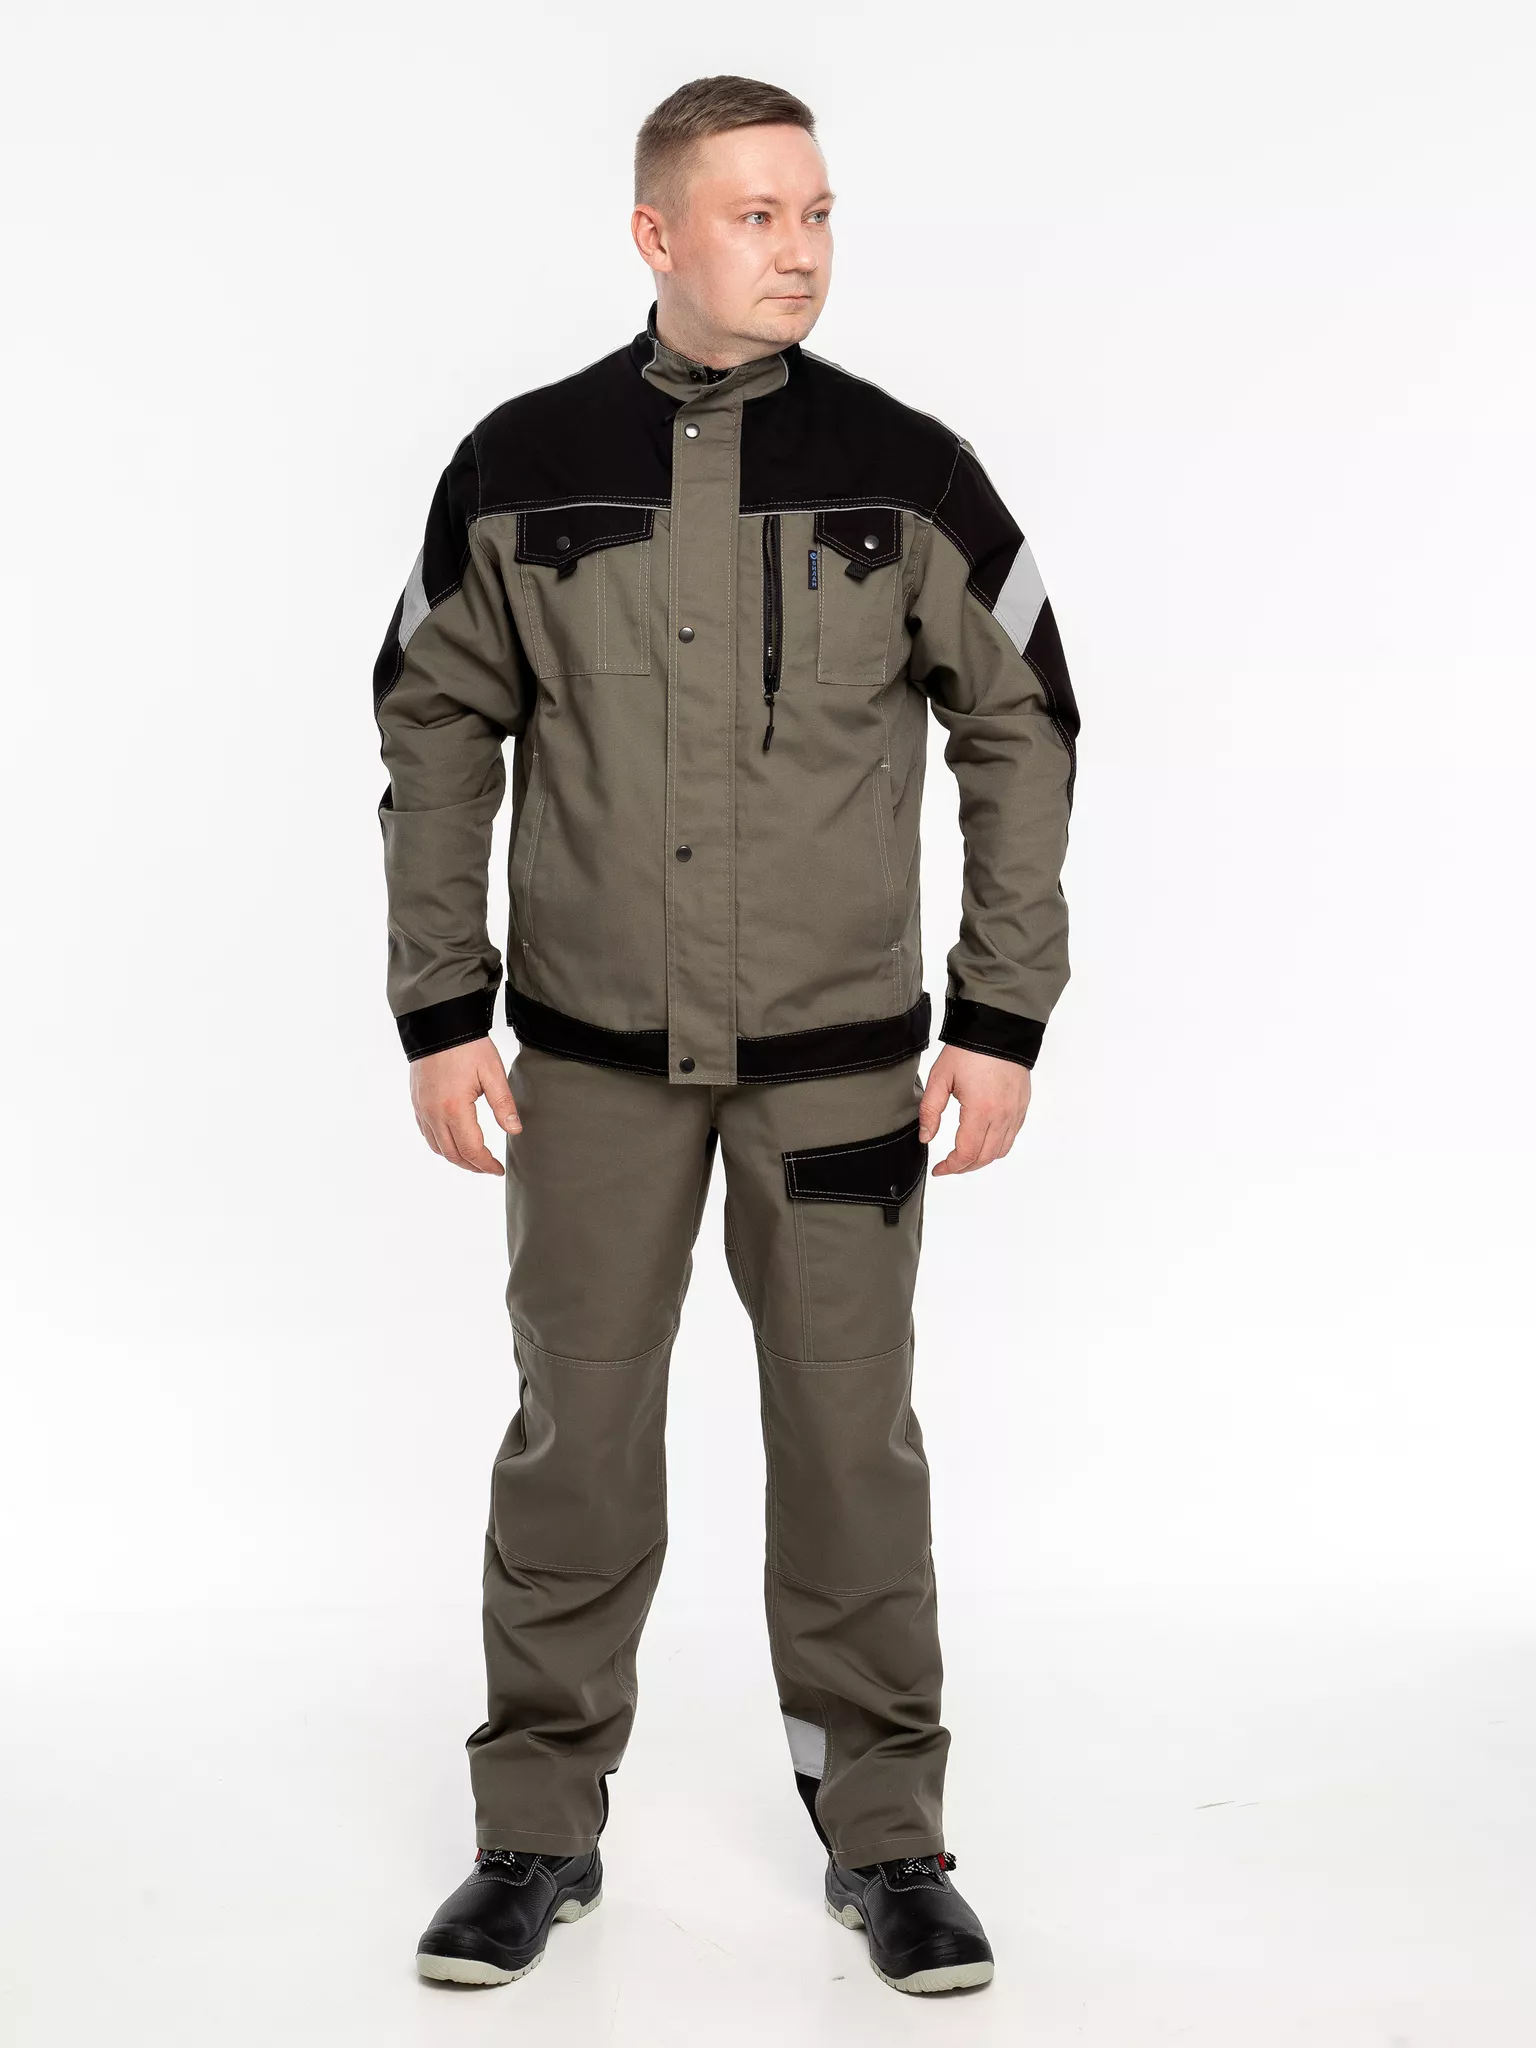 Куртка рабочая КР.366 р.44-46, рост 182-188 (цвет оливковый, отделка черная.СОП)